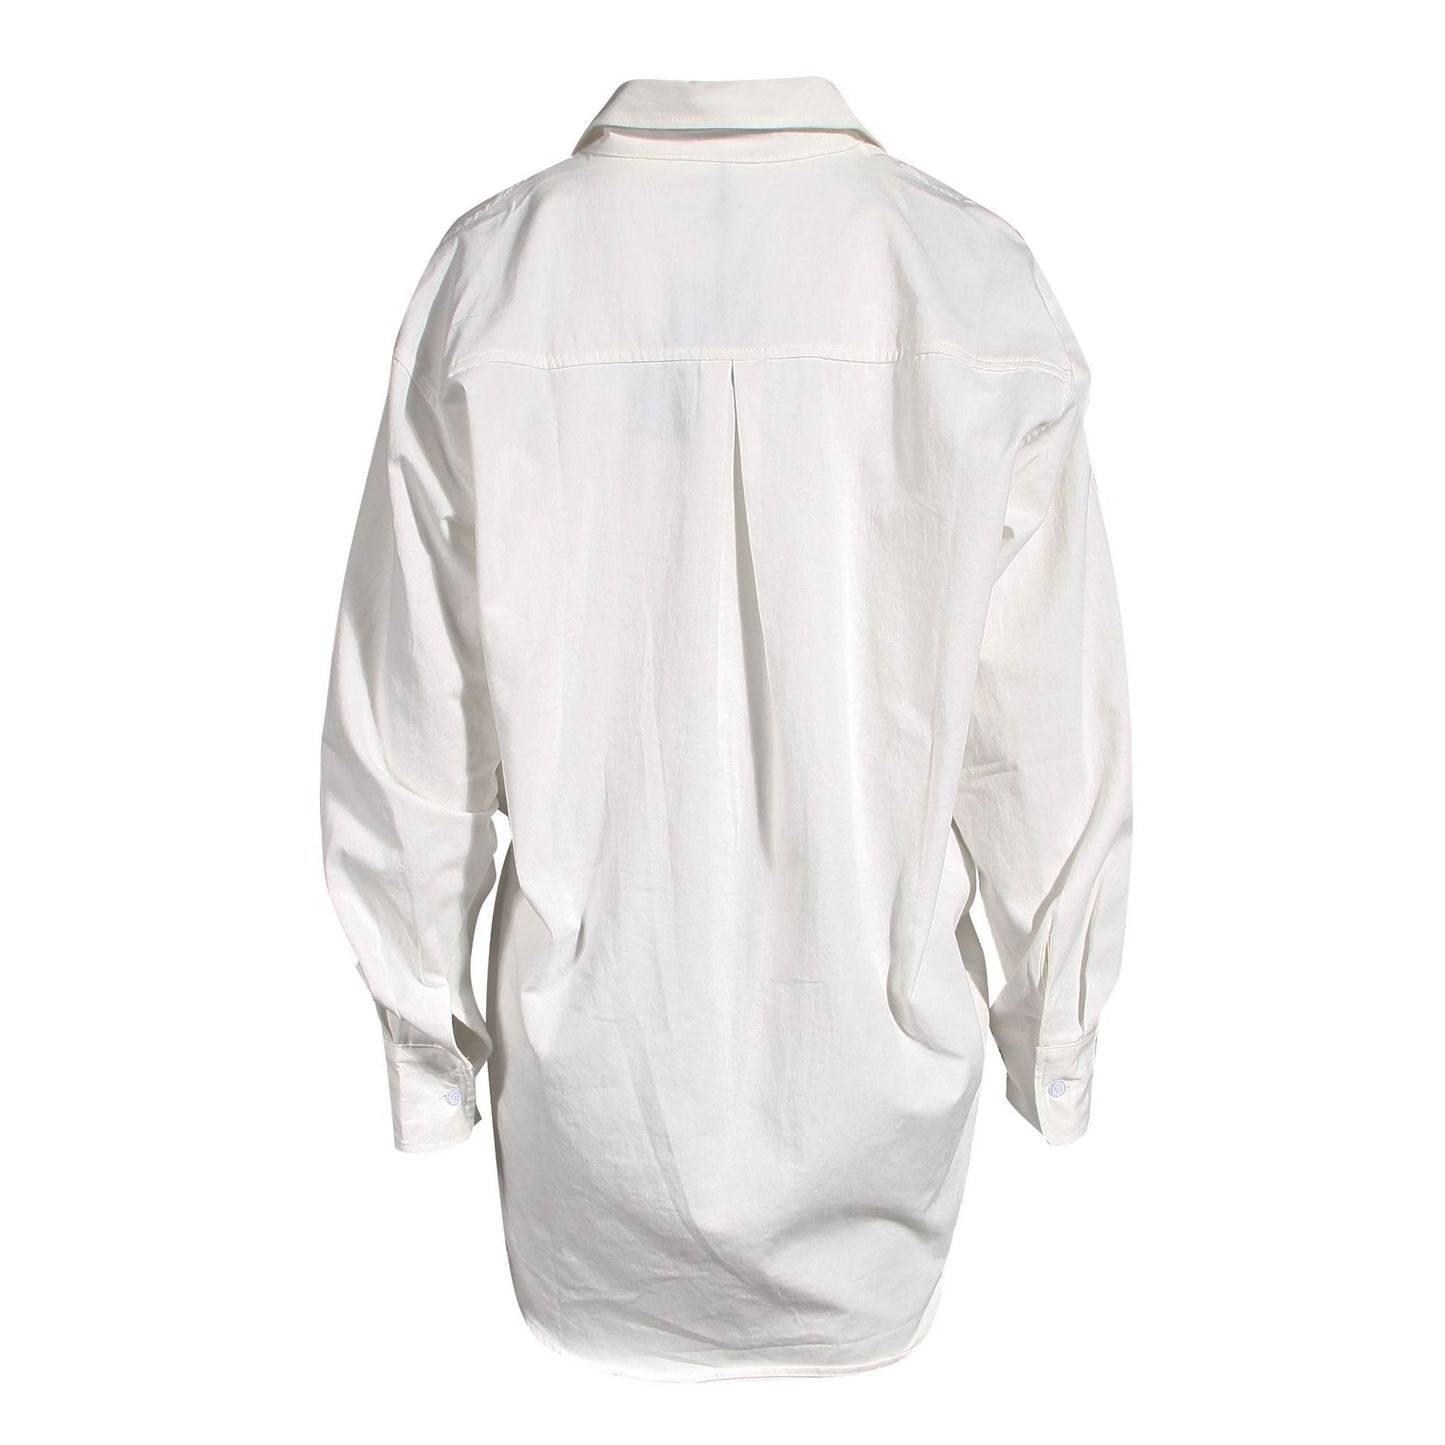 Dream Architect White Irregular Suspender Shirt iYoowe DropShipping